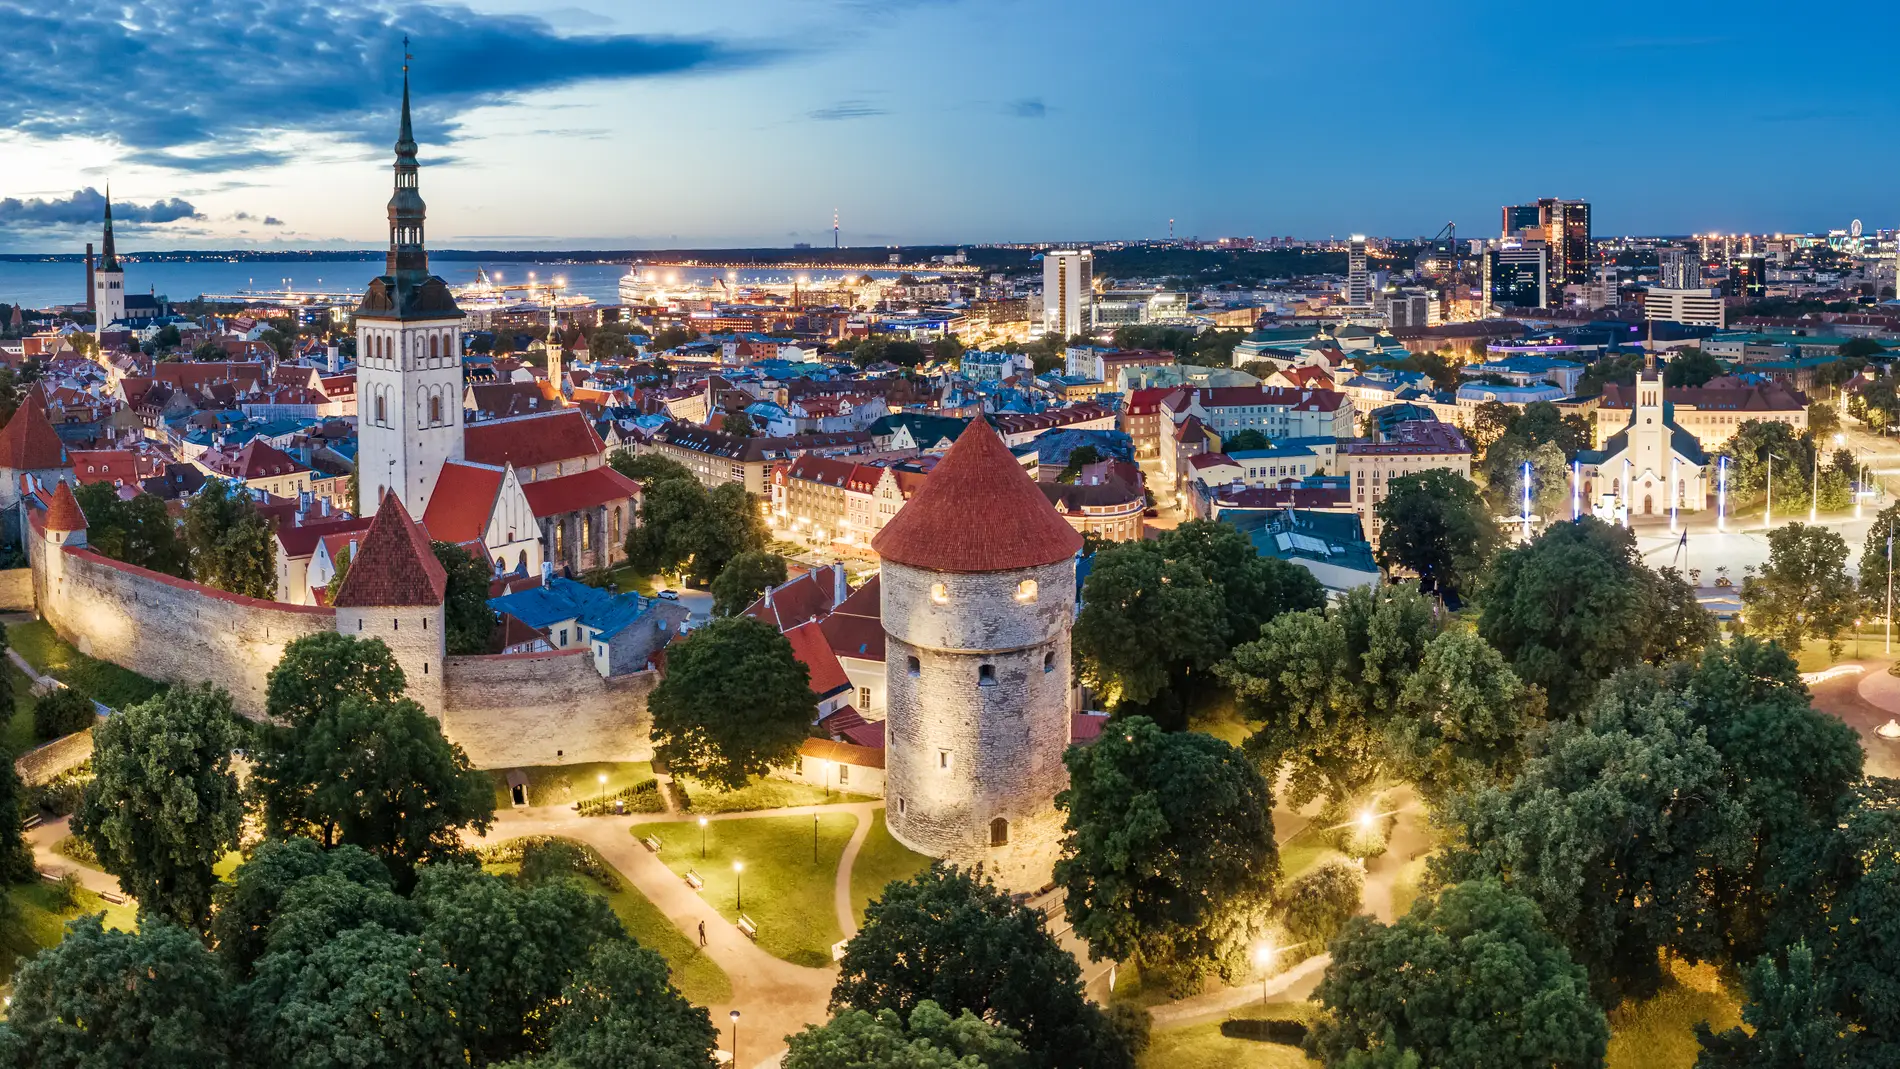 Estos son los 10 mejores restaurantes de Estonia según la Guía Michelin